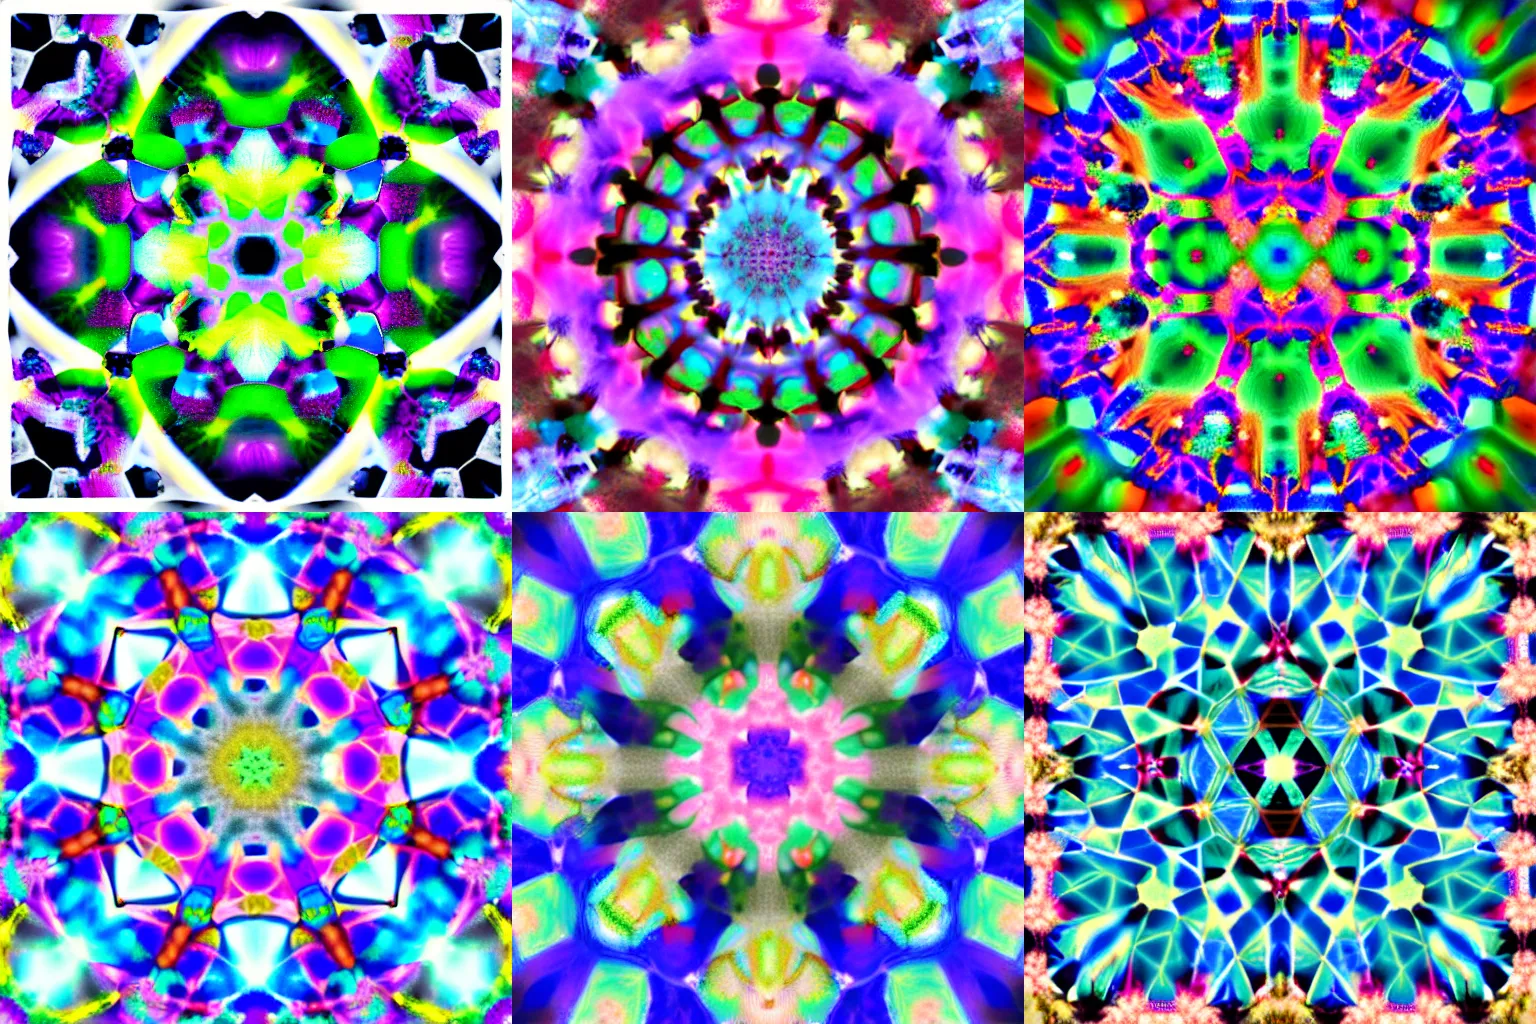 Prompt: cotton candy, irregular, non-symmetrical fractals viewed through a kaleidoscope, hexagonal segments